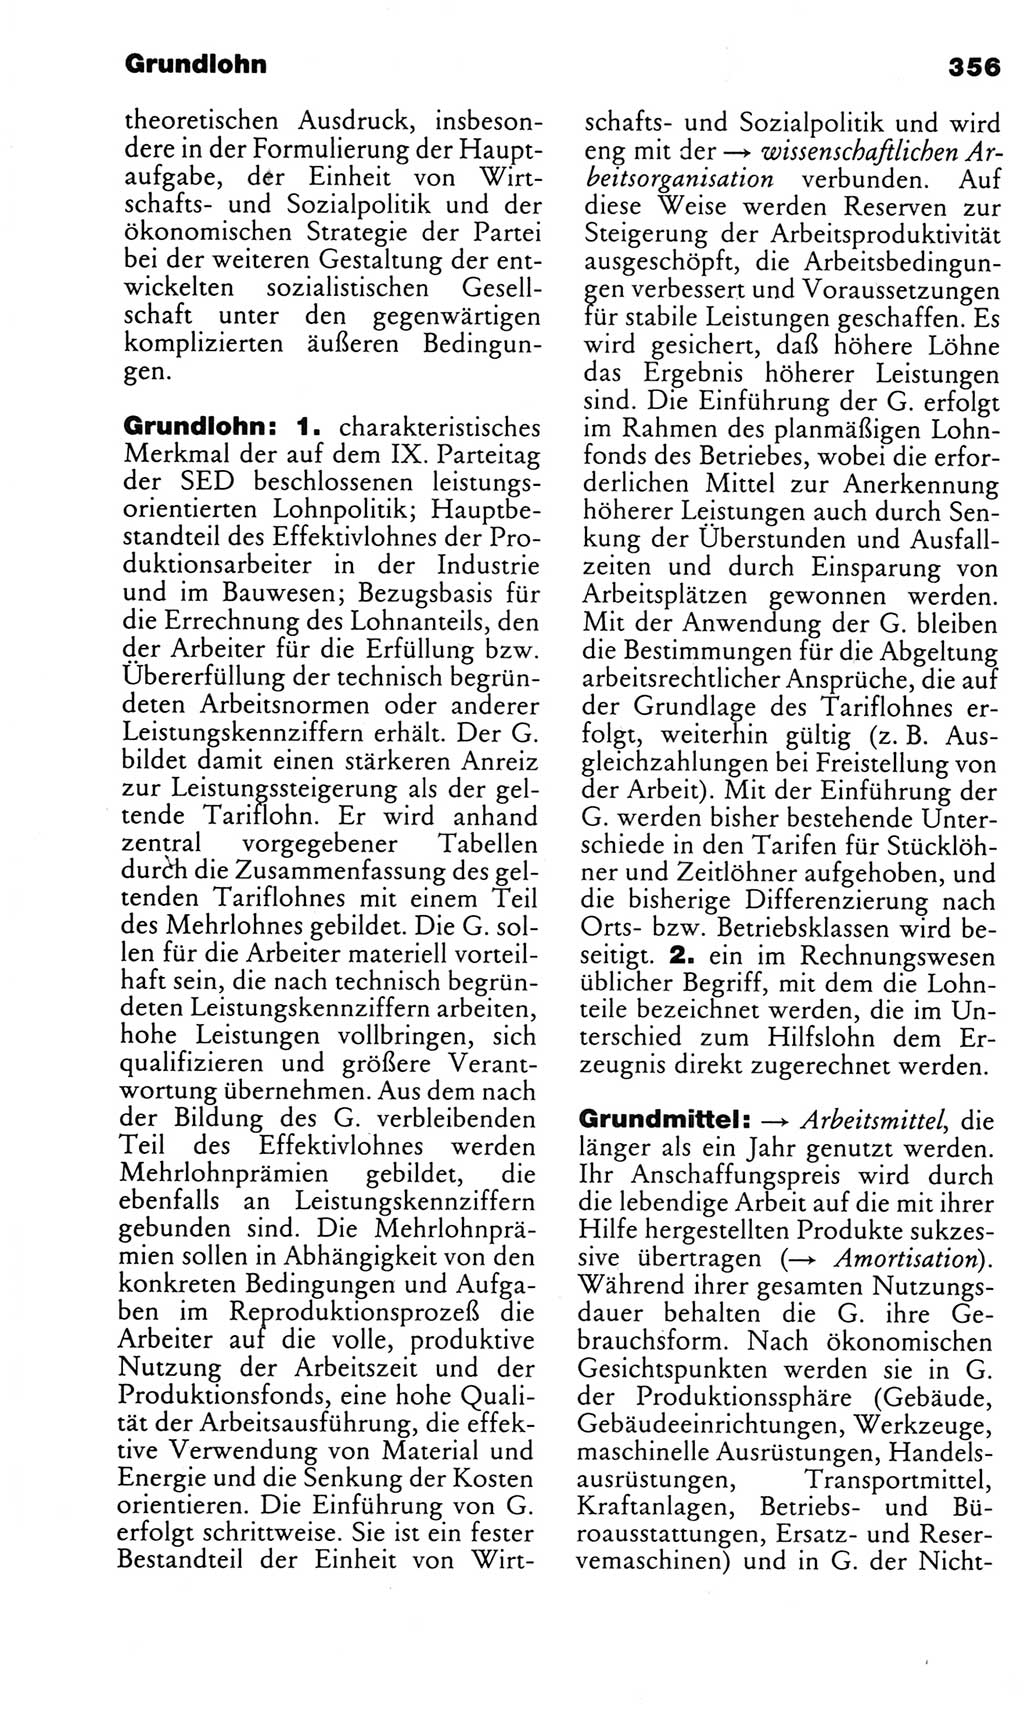 Kleines politisches Wörterbuch [Deutsche Demokratische Republik (DDR)] 1983, Seite 356 (Kl. pol. Wb. DDR 1983, S. 356)